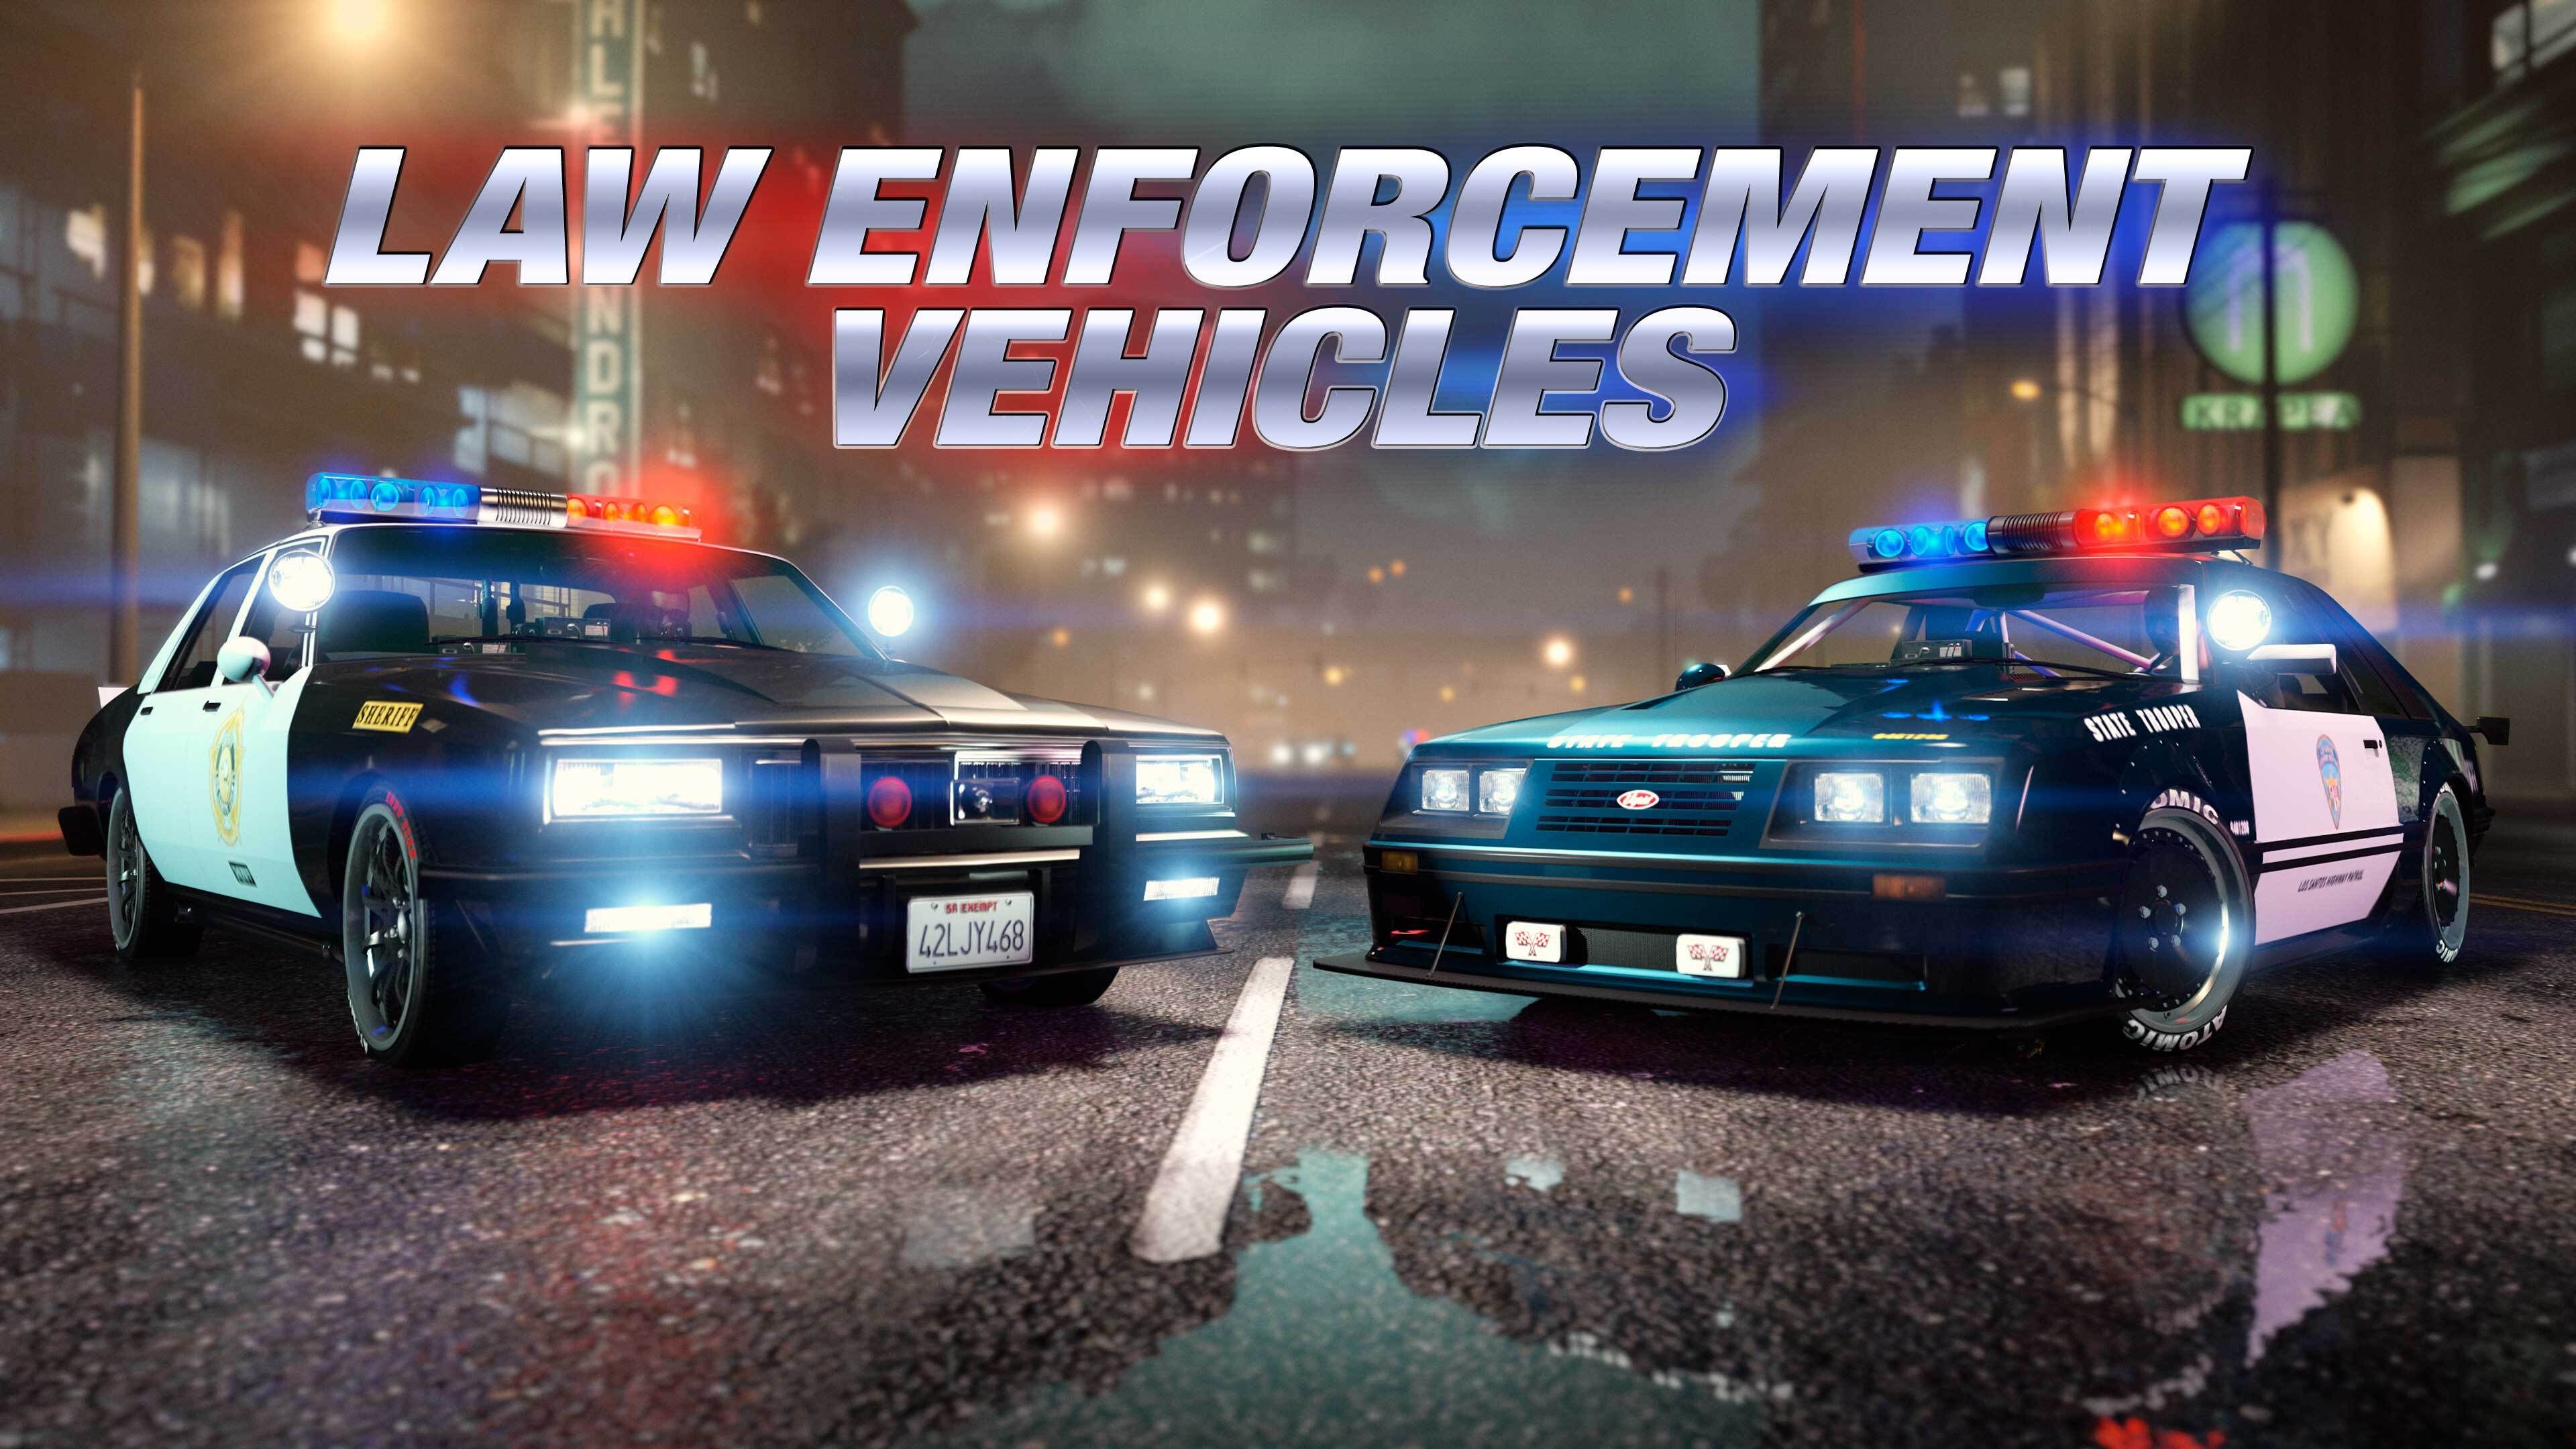 Esta semana en GTA Online: dos nuevos vehículos policiales, misiones de patrulla y bonificaciones en carreras, y mucho más